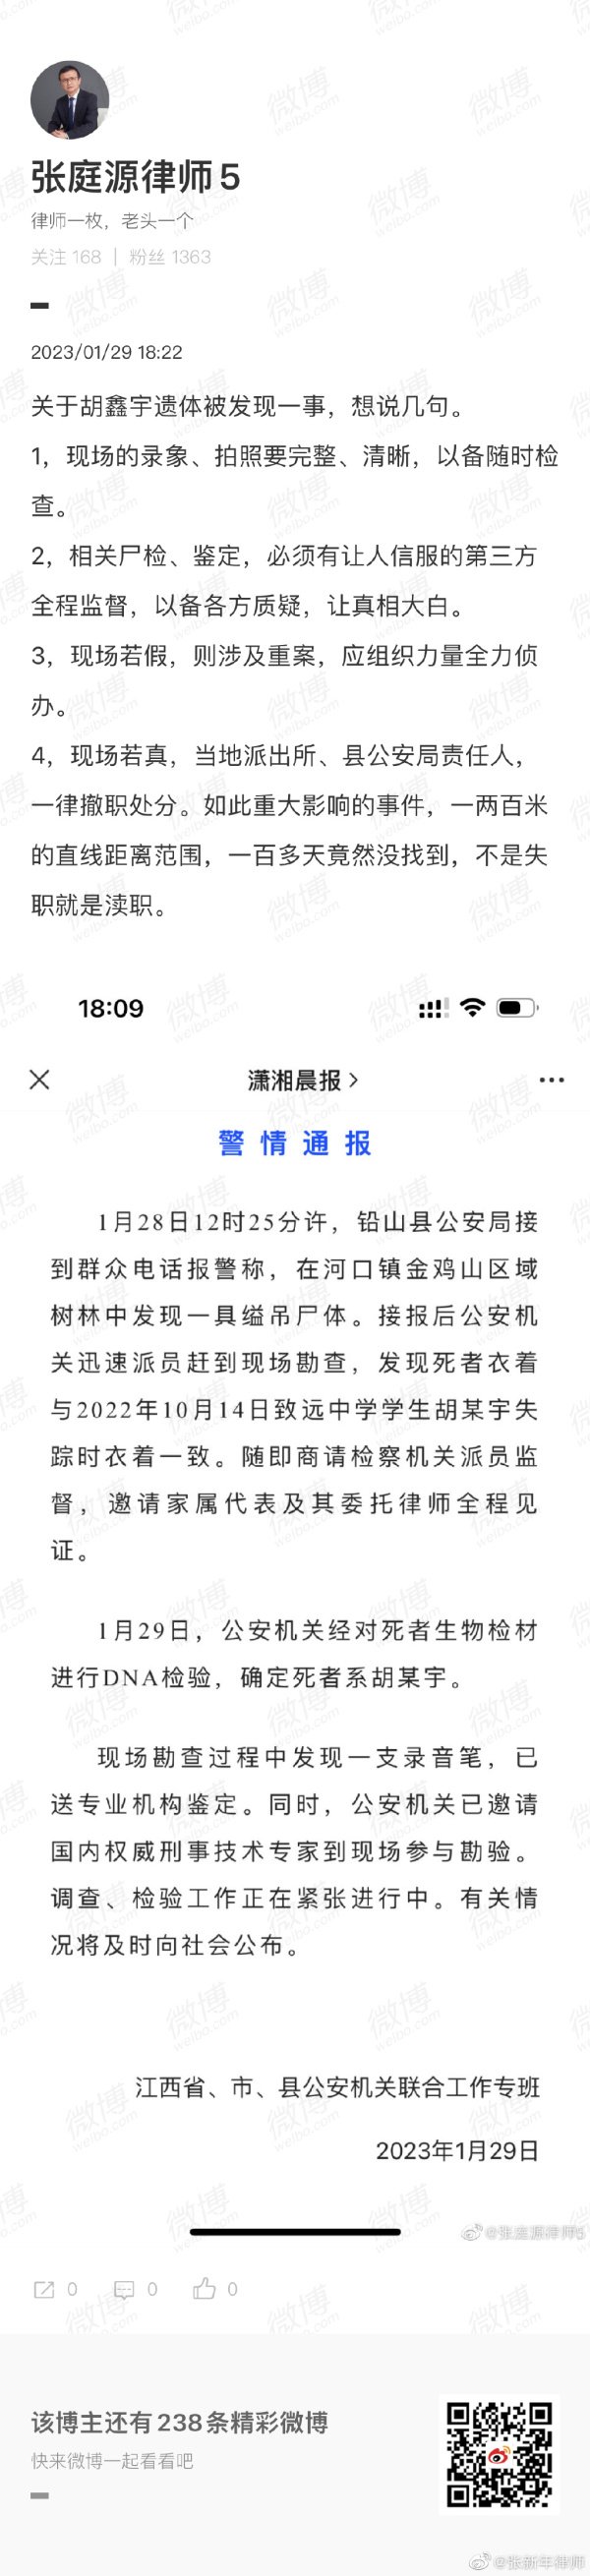 张新年律师质疑胡鑫宇案